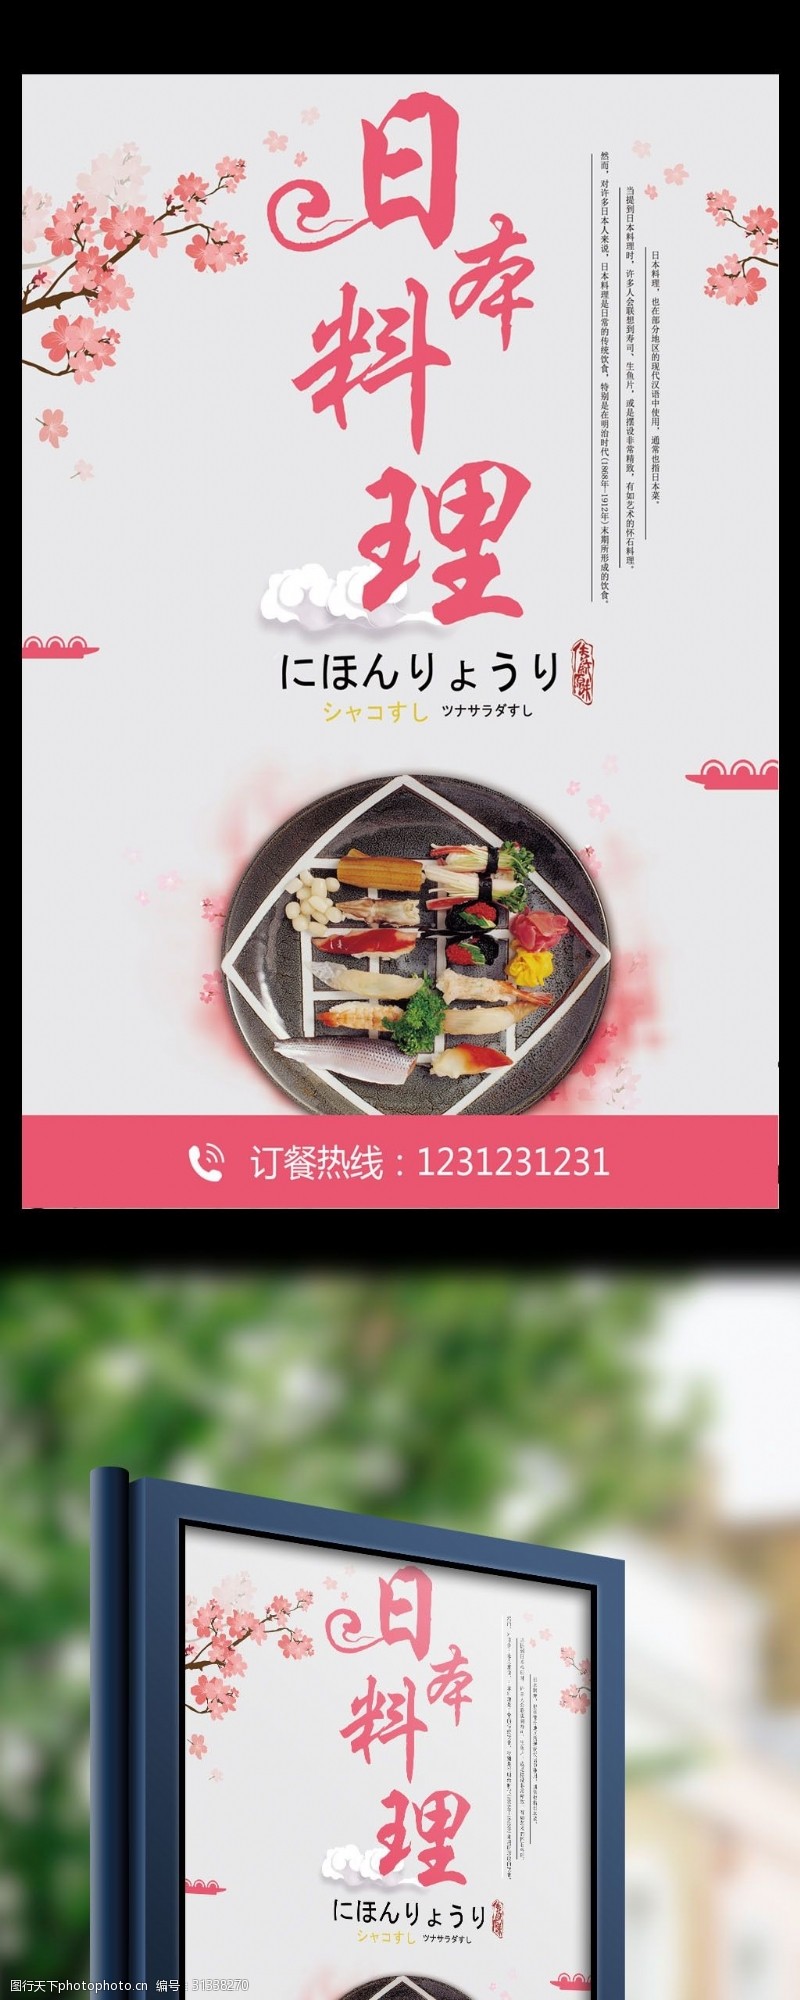 日本旅游广告日式料理餐饮海报